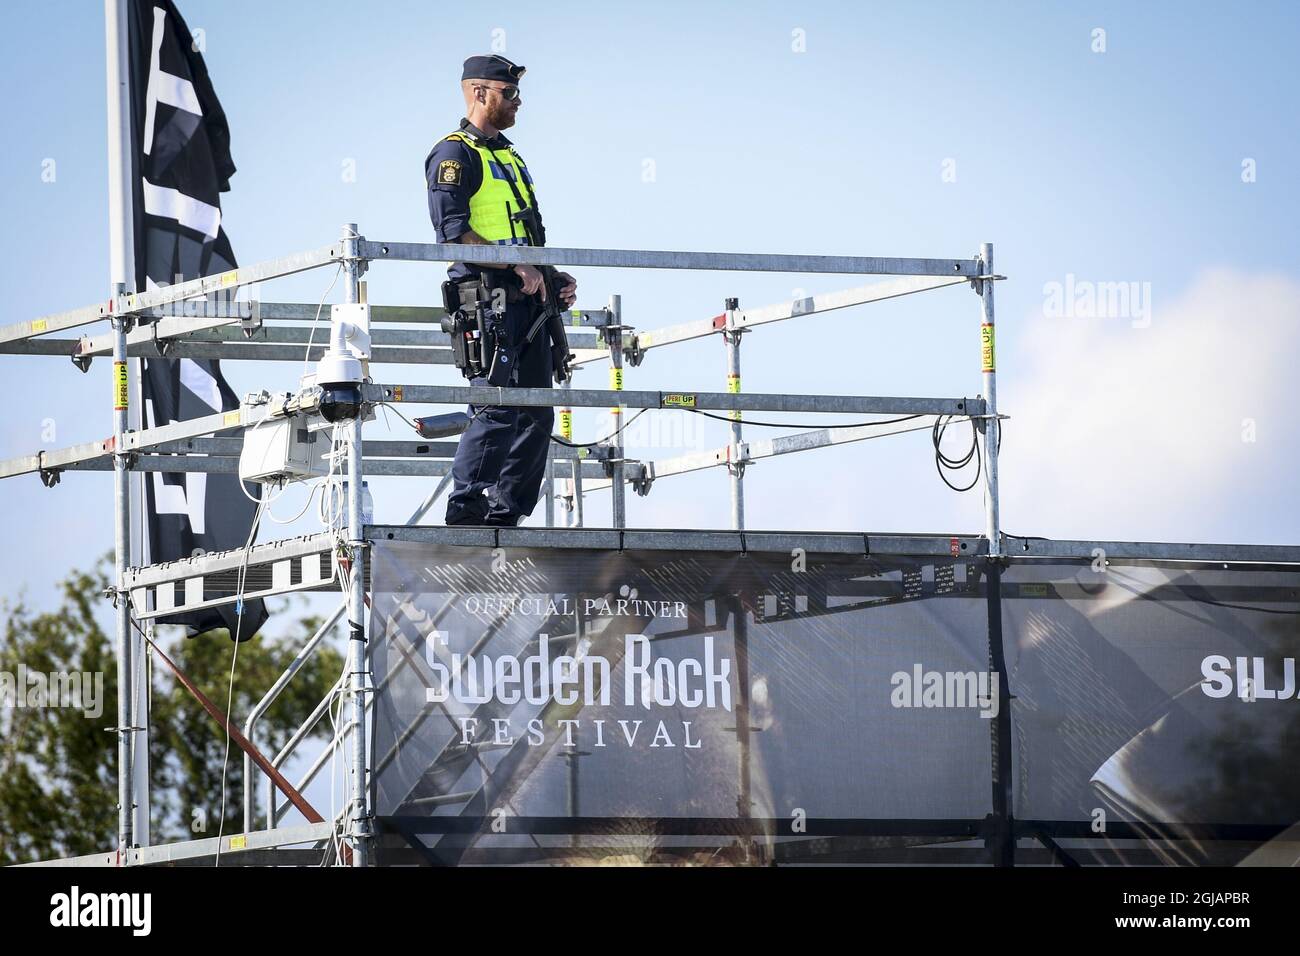 NORJE 20170607 officiers de police armés le premier jour du 'Festival Rock de Suède' à Norje, en Suède, mercredi. En raison des récentes attaques terroristes la sécurité est plus serrée cette année Foto: Fredrik Sandberg / TT / Kod 10080 swedenrock2017 Banque D'Images